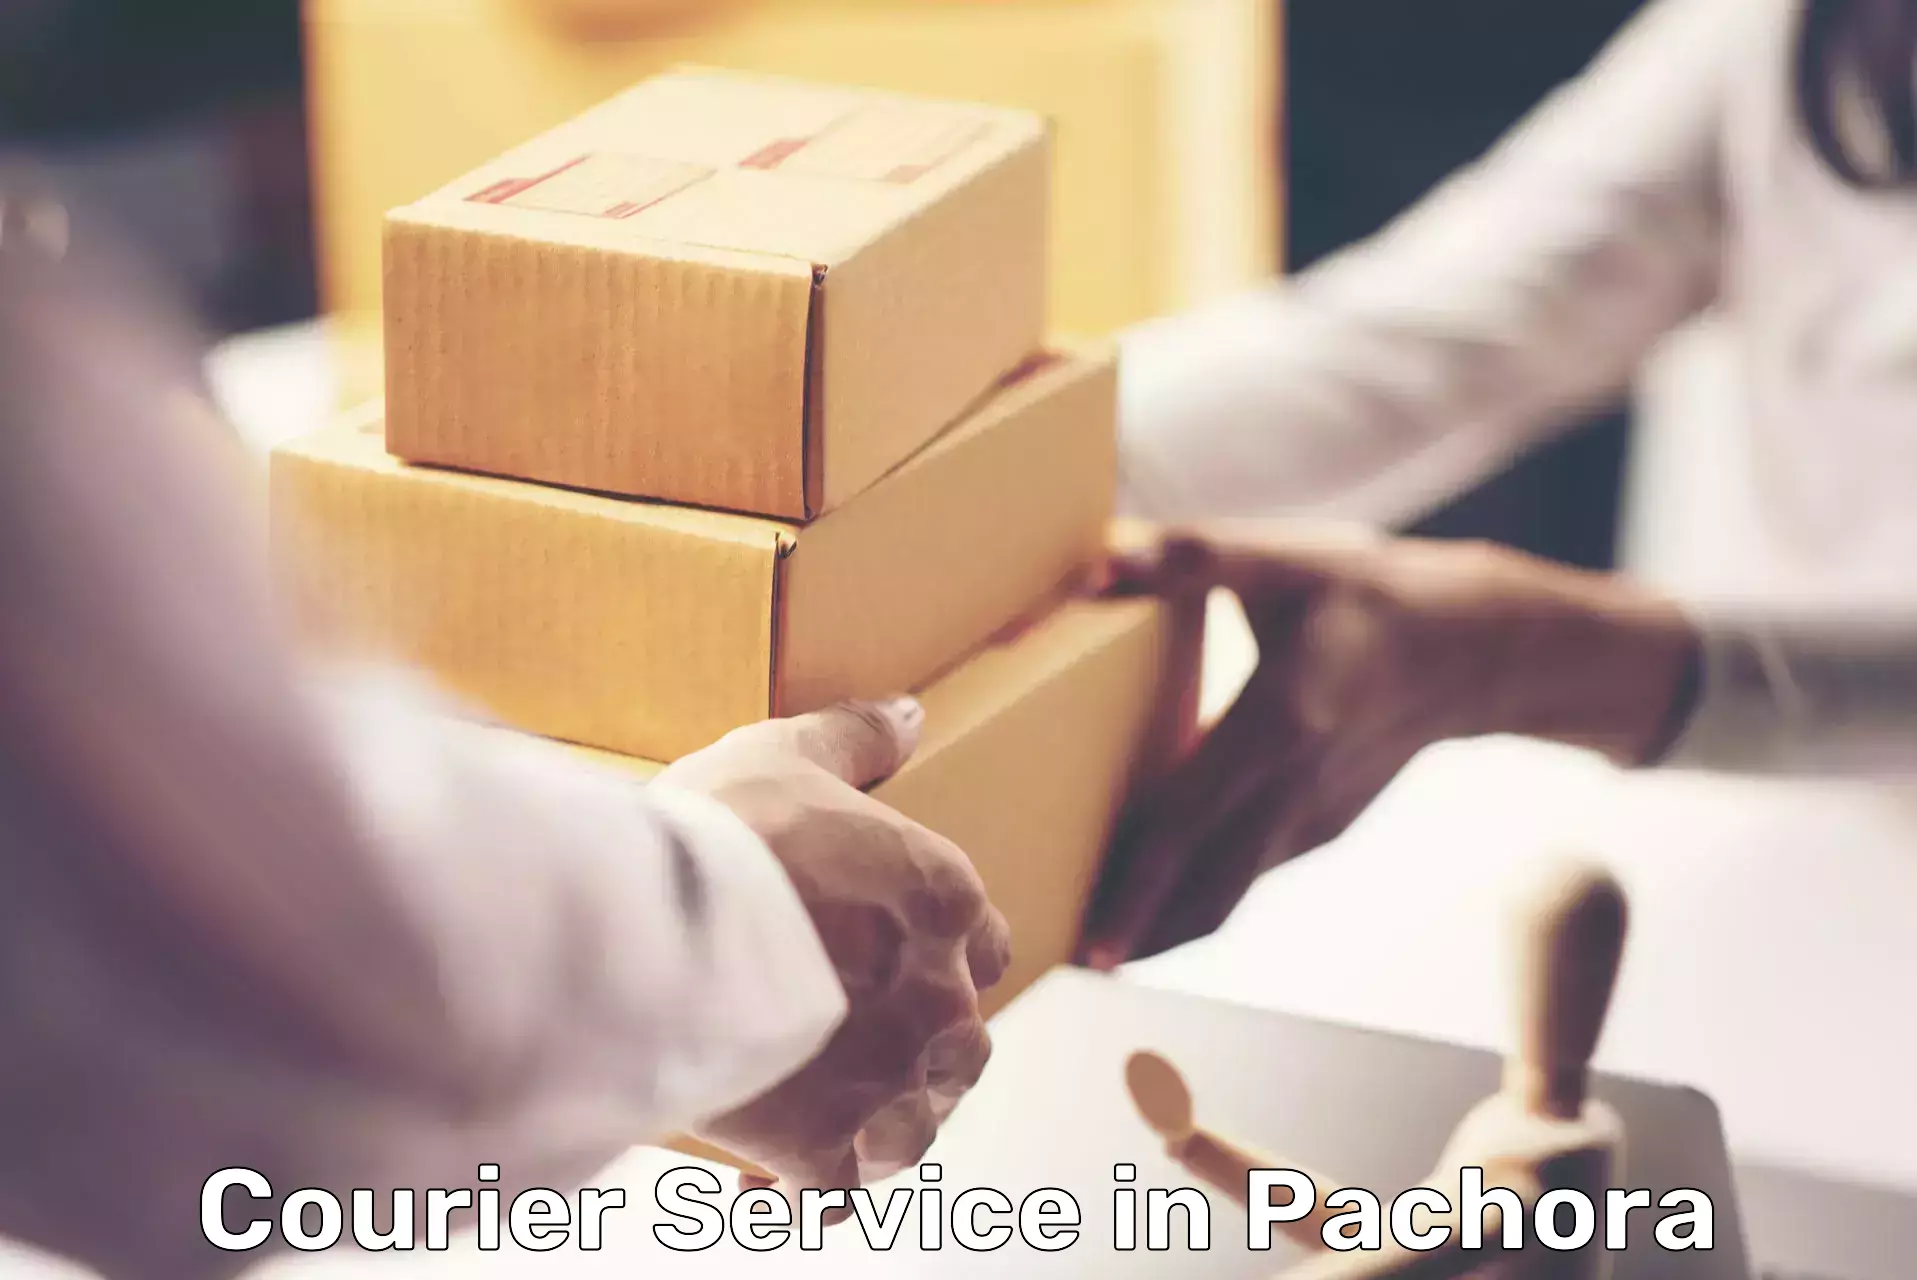 Secure packaging in Pachora